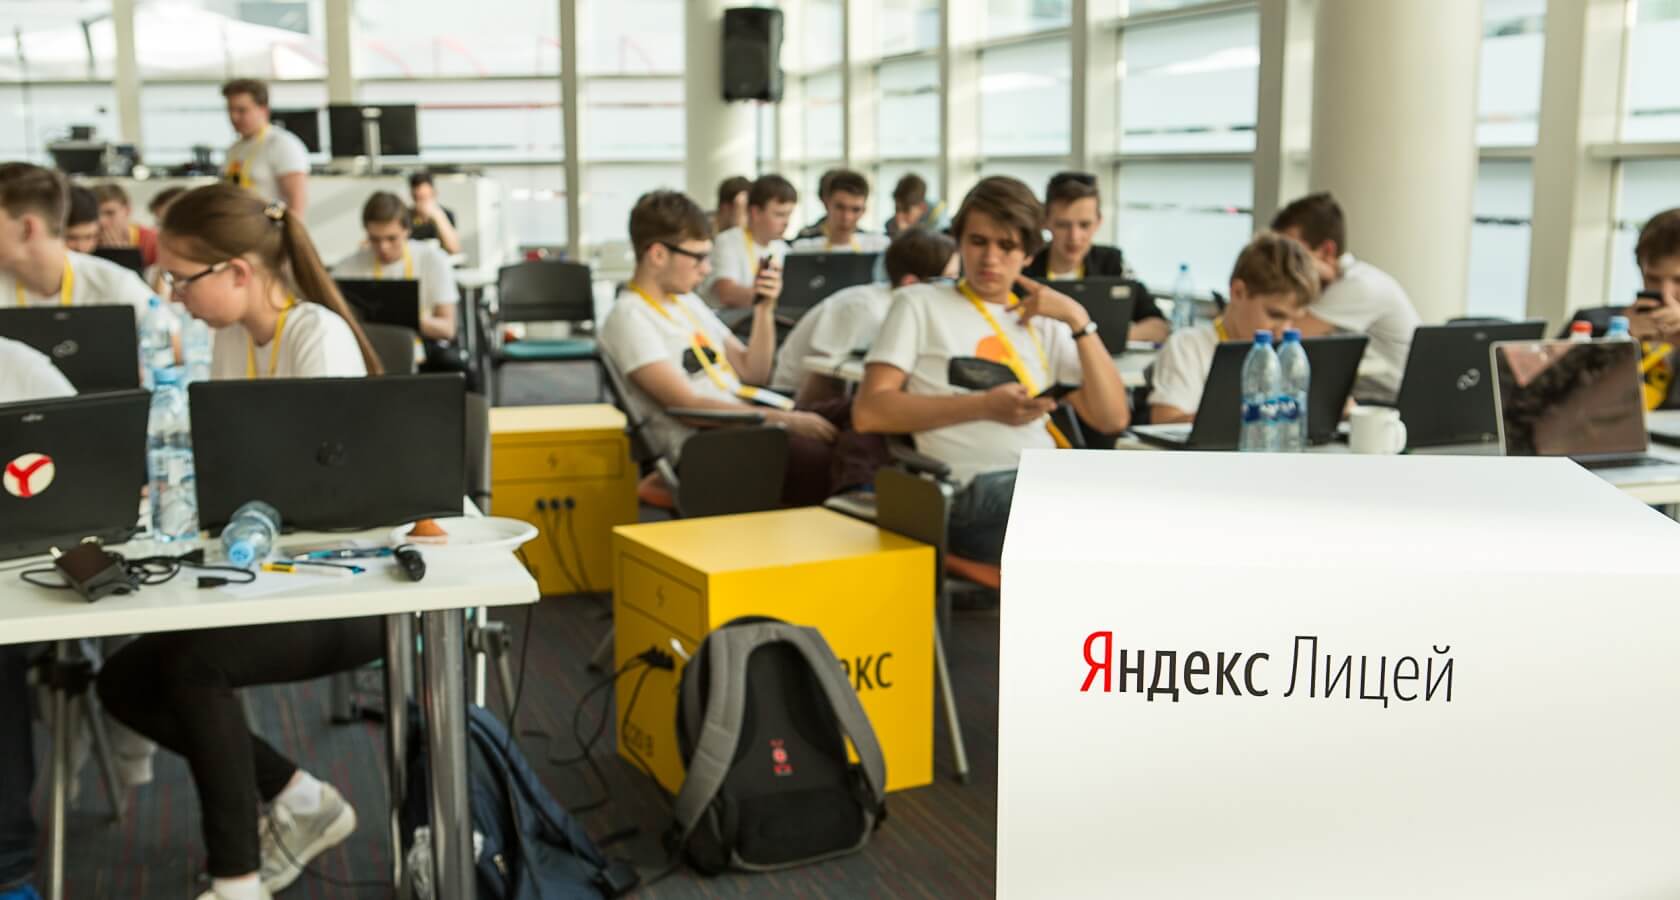 В Костроме набирают школьников в проект «Яндекс.Лицей»